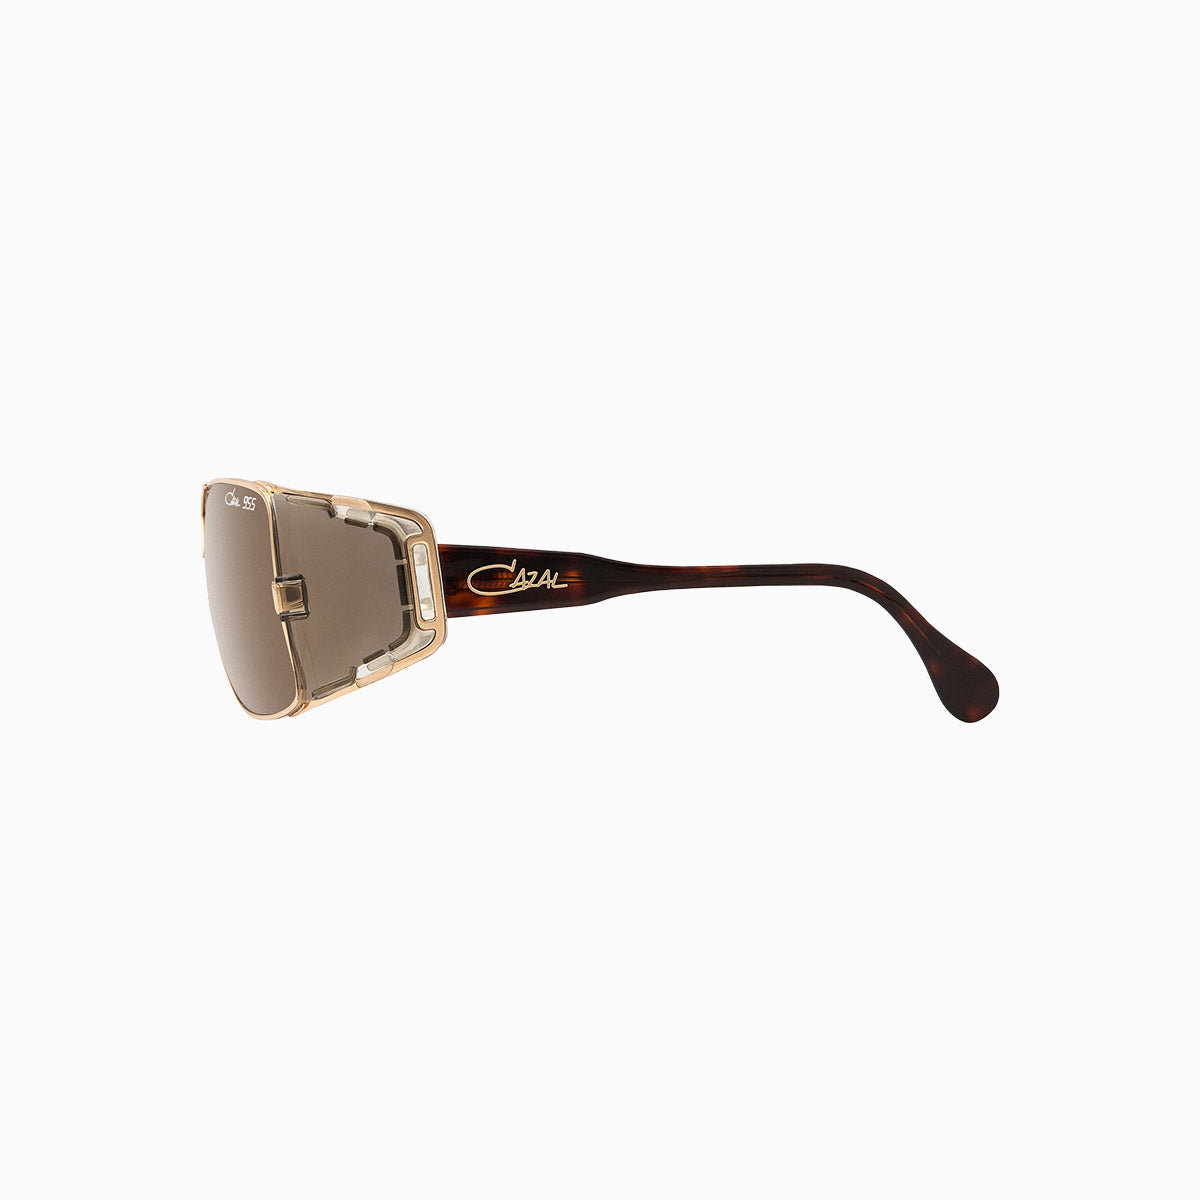 cazal-eyewear-mod-955-cazal-gold-sunglasses-955-97